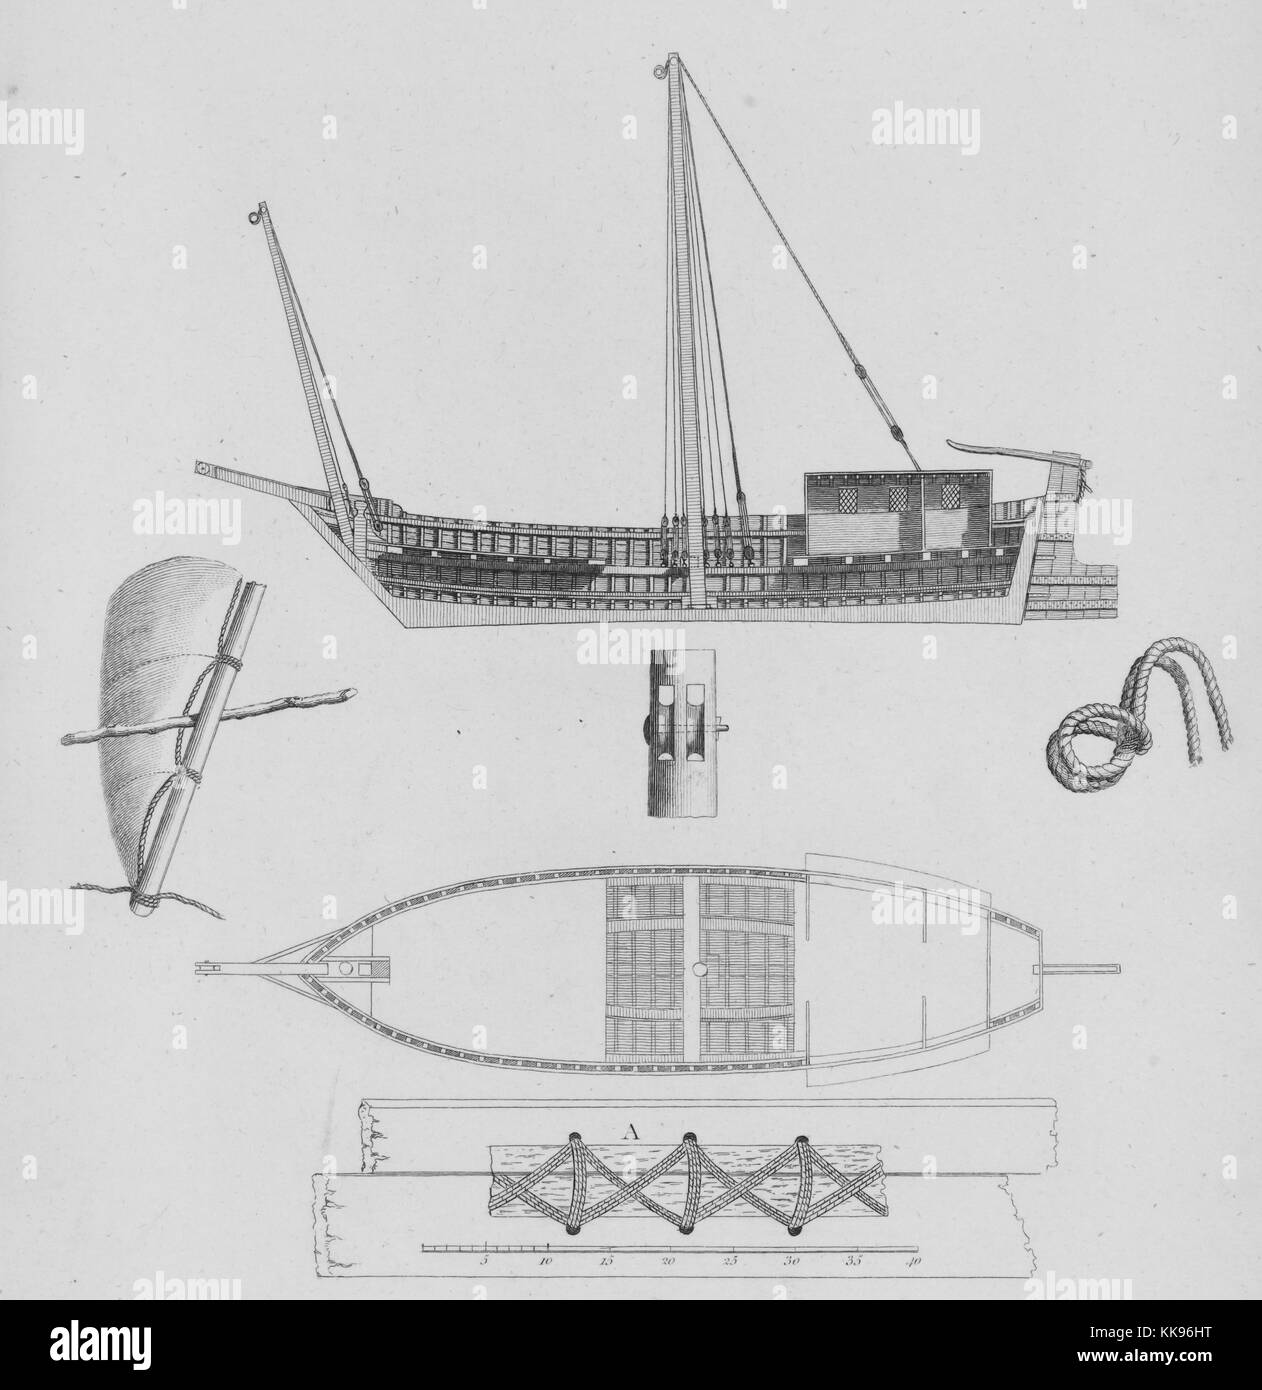 Illustrazione di diverse sezioni e di parti di un egiziano Canja barca, che illustra come le assi sono state cucite insieme senza chiodatura, 1805. Dalla Biblioteca Pubblica di New York. Foto Stock